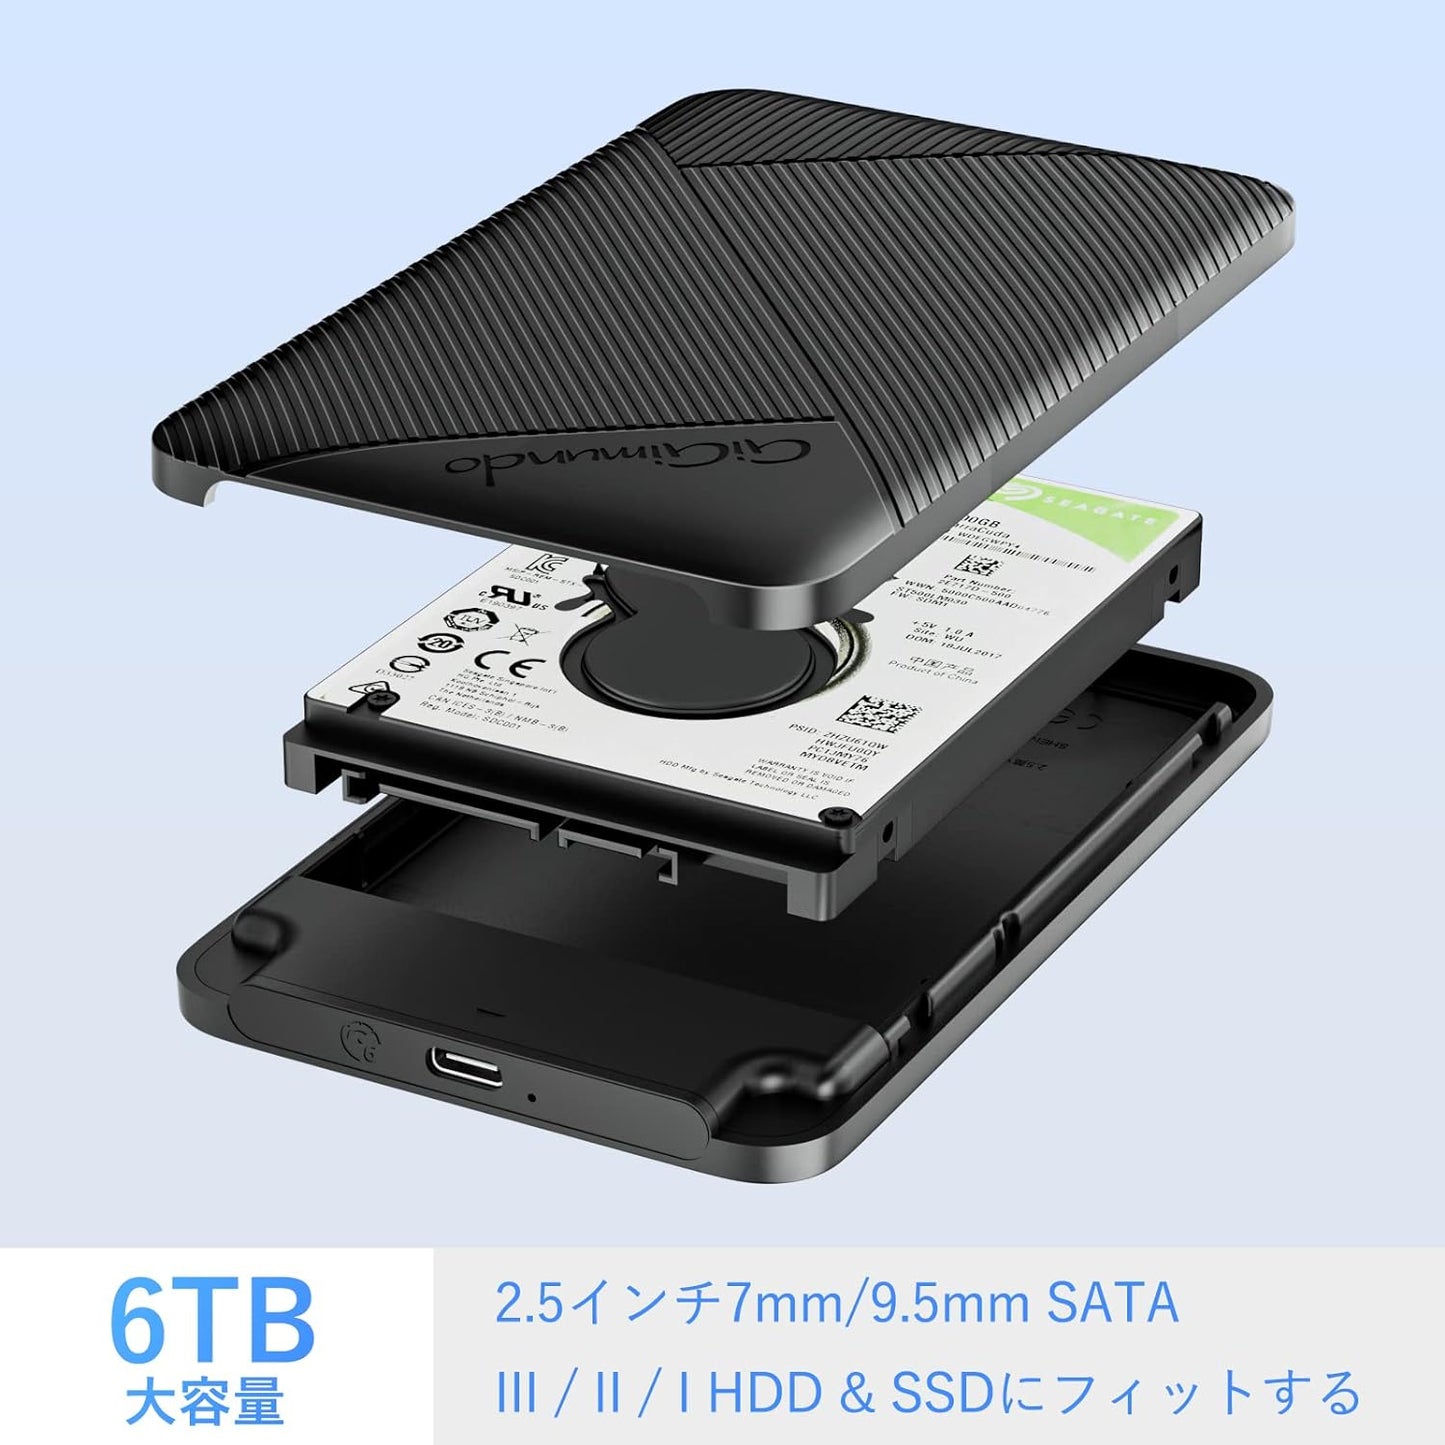 2.5インチ HDD ケース ハードディスク USB 3.0接続 SATA 9.5mm/7mm SATA HDD SSD 対応 6Gbps高速転送速度 6TB容量対応 工具不要 UASP対応 USB C-USB A ケーブル付き ブラック(C-black)